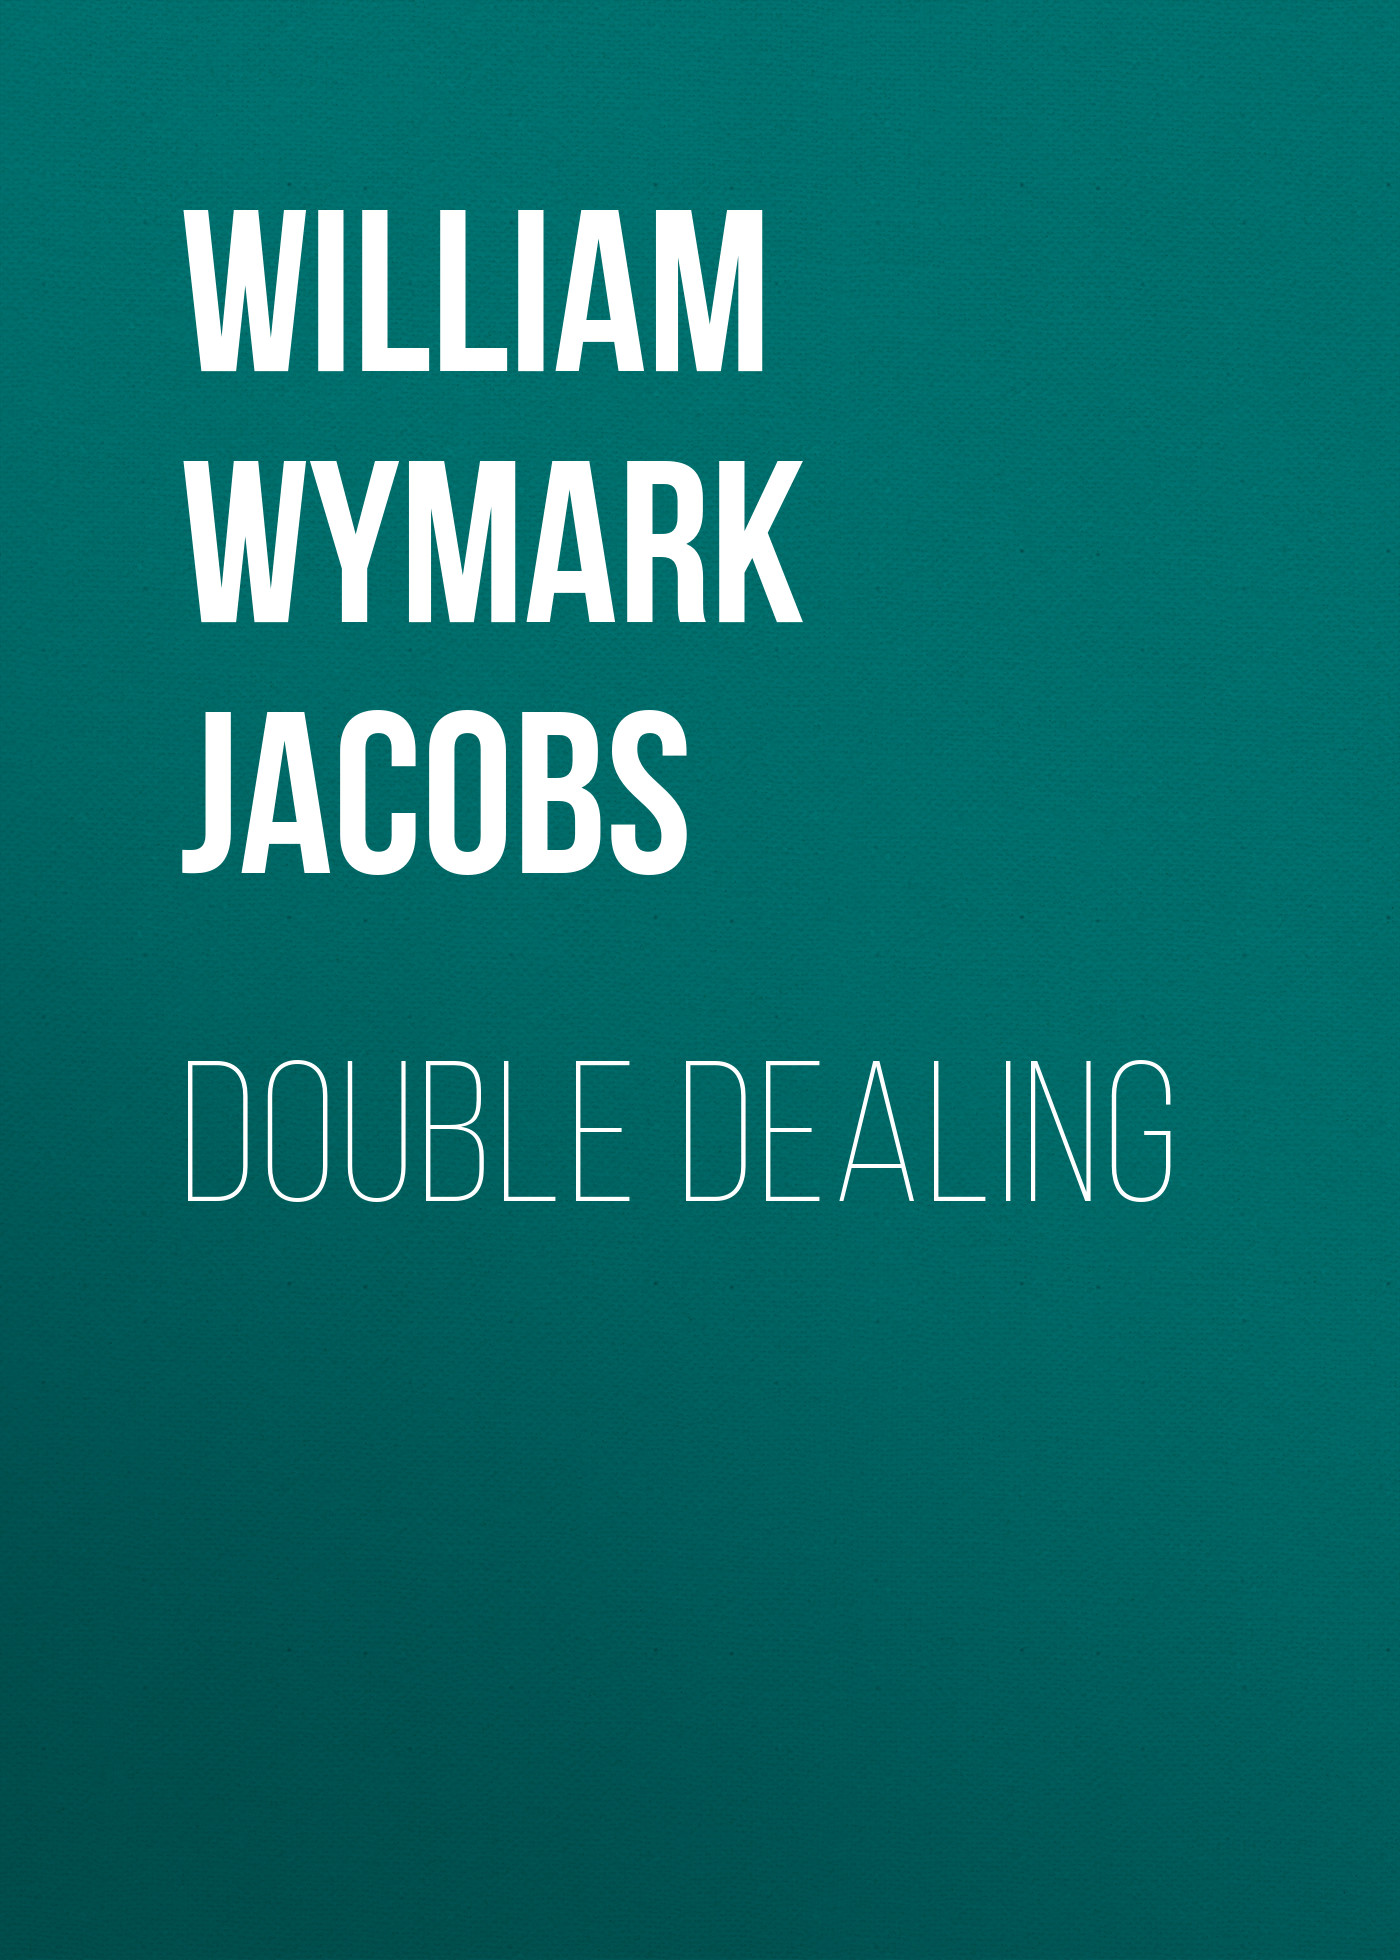 Книга Double Dealing из серии , созданная William Wymark Jacobs, может относится к жанру Зарубежный юмор, Зарубежная старинная литература, Зарубежная классика. Стоимость электронной книги Double Dealing с идентификатором 34842446 составляет 0 руб.